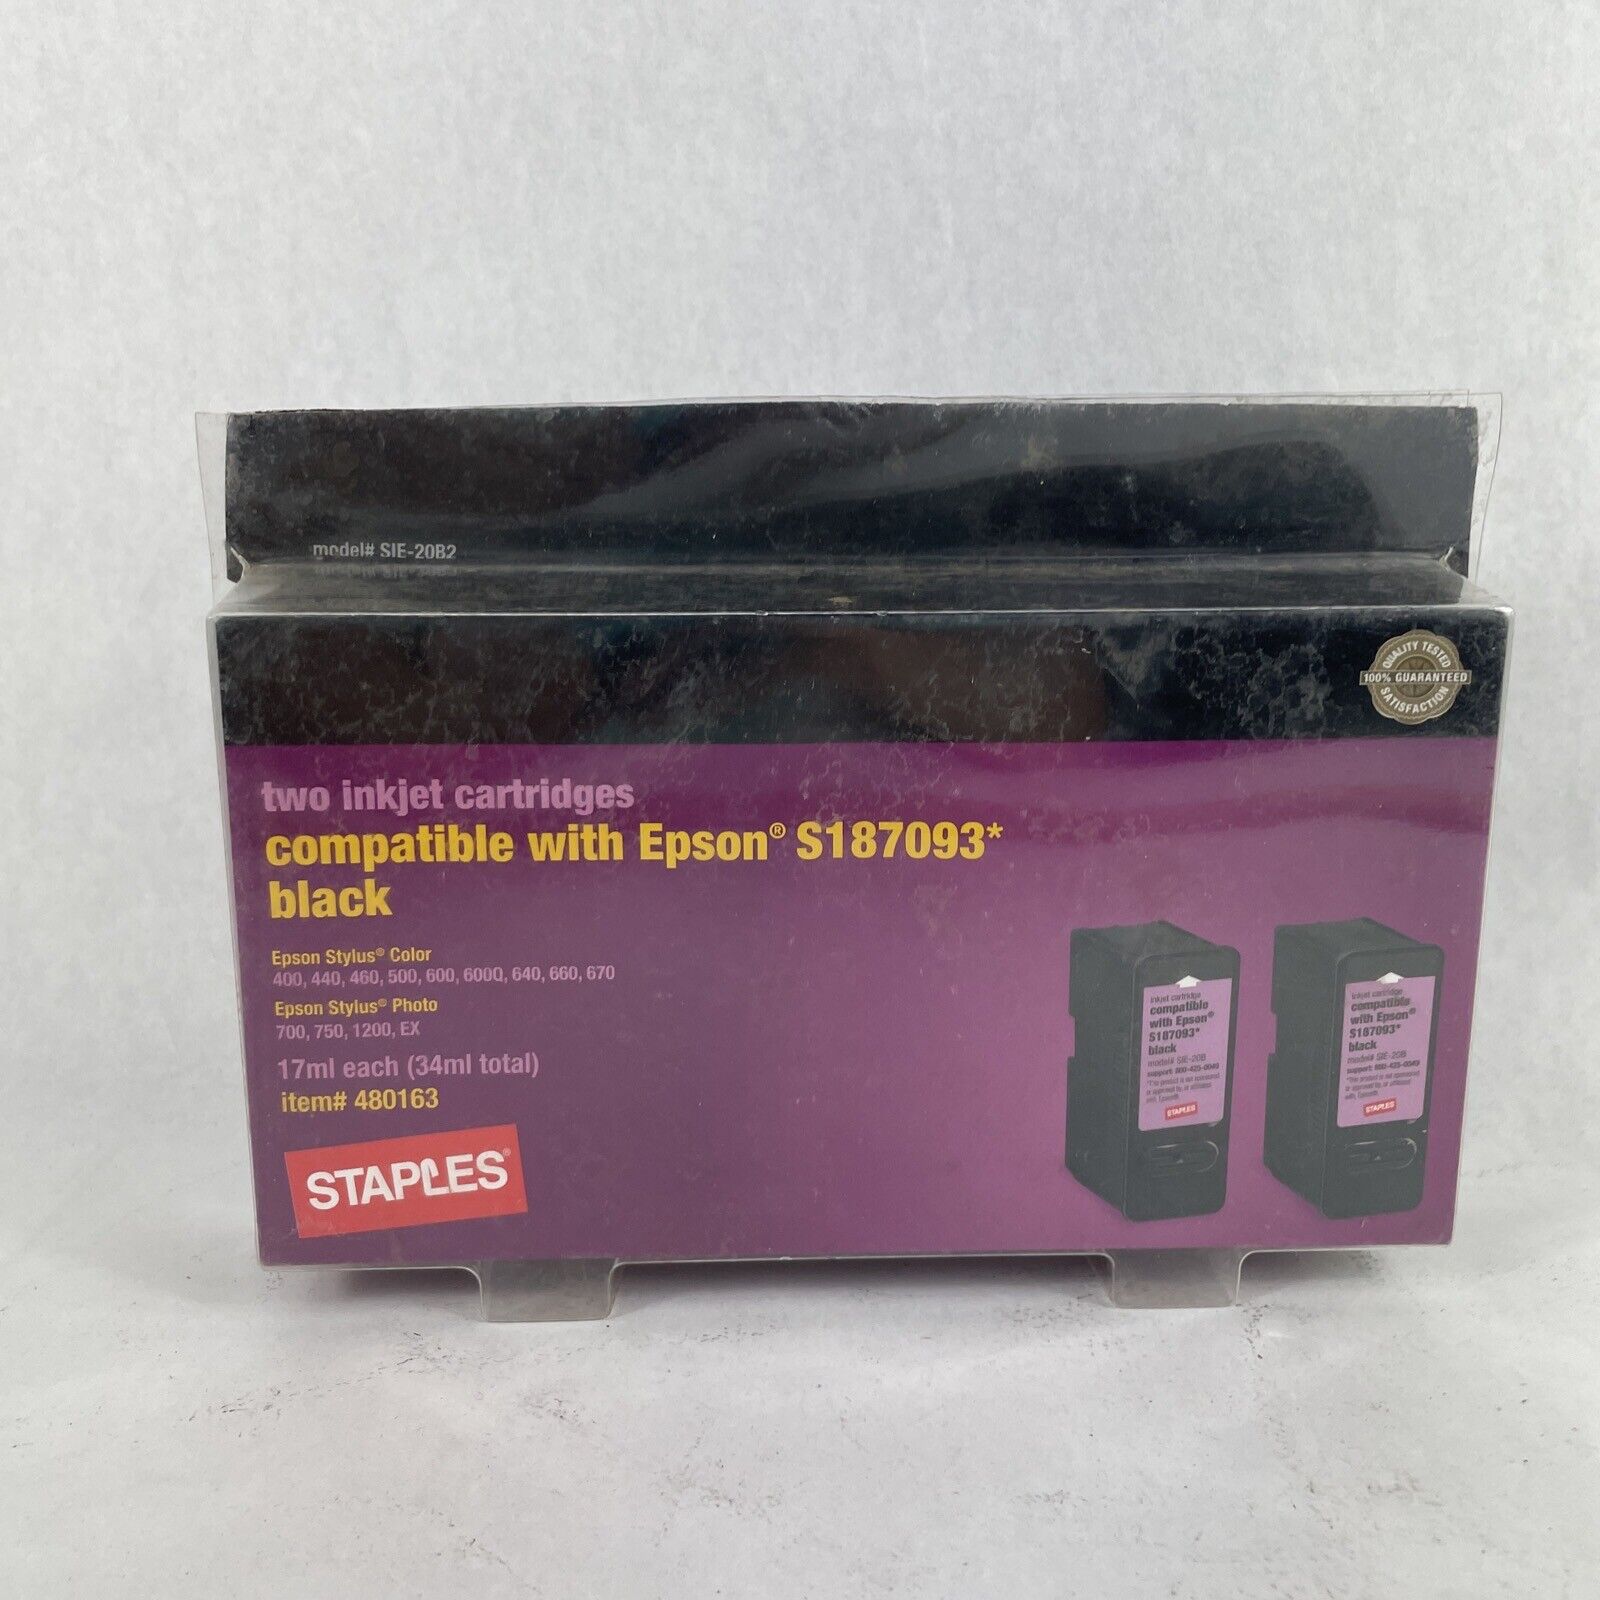 Staples Two Inkjet Cartridges Color Black For Epson S187093 Item#480163, Open Bx